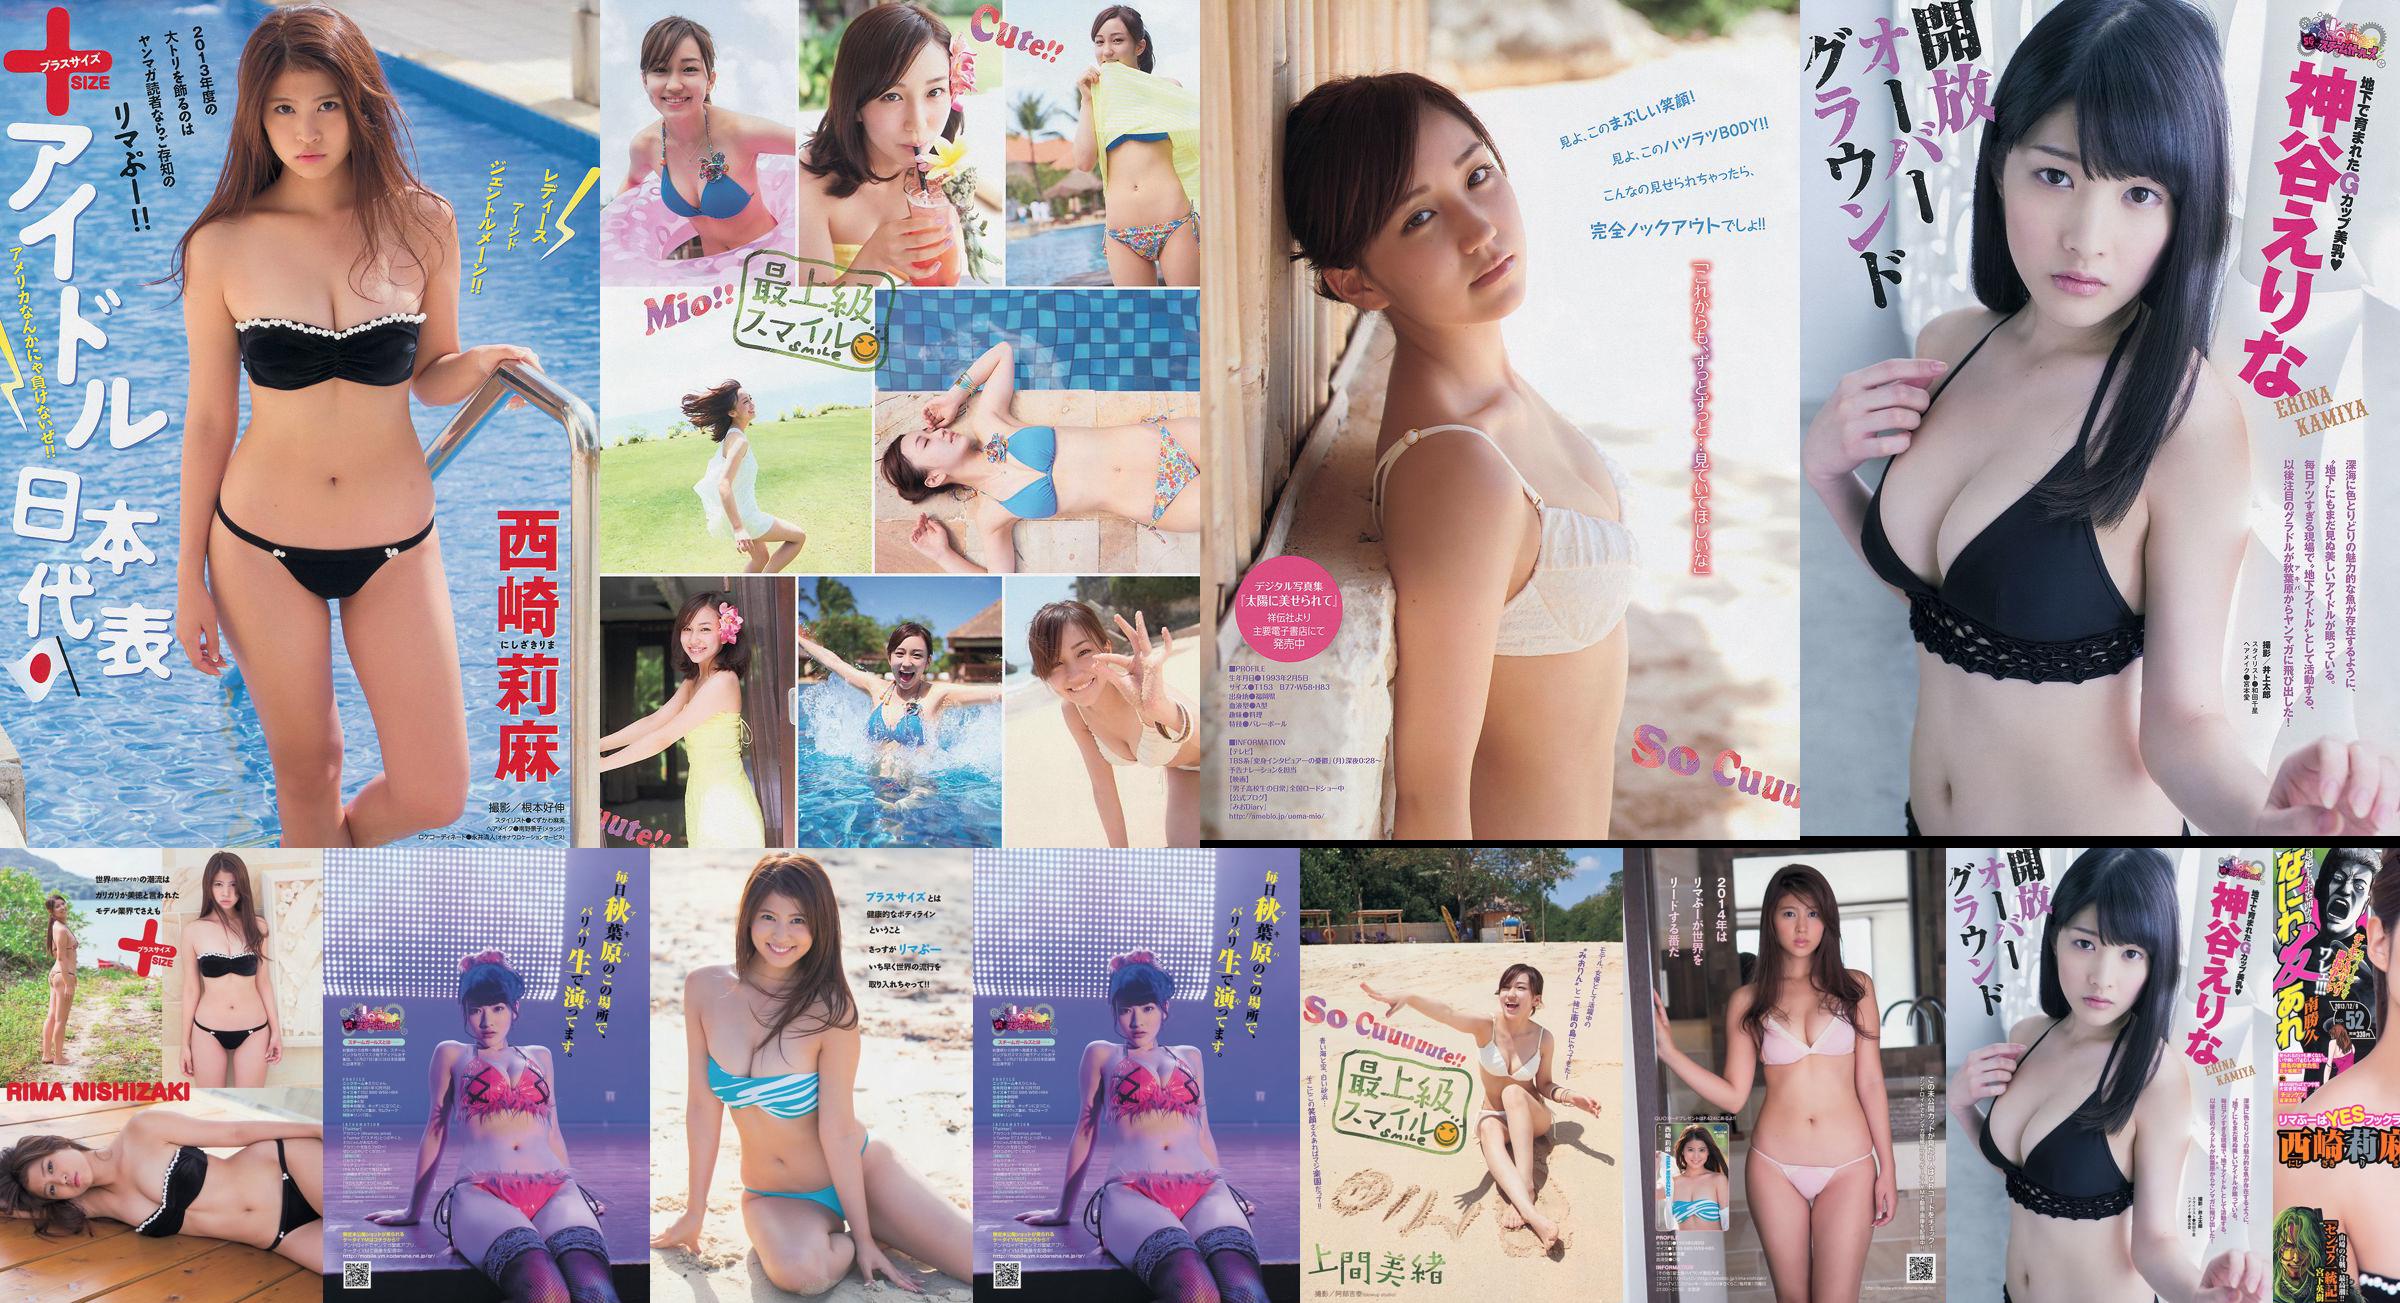 [Majalah Muda] Rima Nishizaki Mio Uema Erina Kamiya 2013 No.52 Foto Moshi No.c505e1 Halaman 1